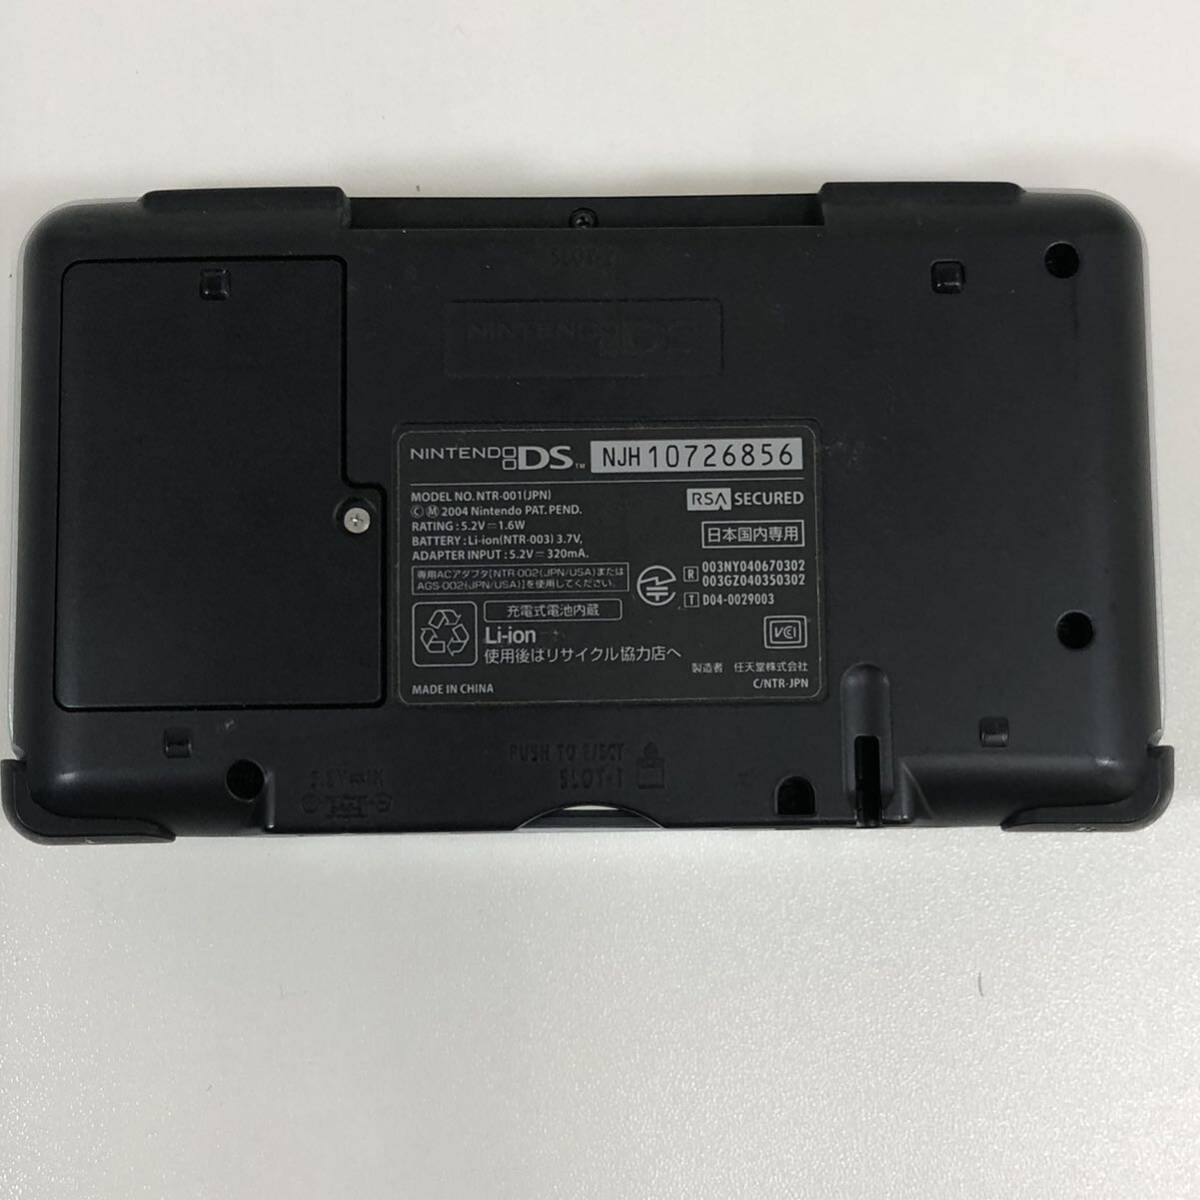 G* nintendo Nintendo Nintendo DS NTR-001 платина серебряный царапина загрязнения есть электризация работоспособность не проверялась инструкция наружная коробка с ремешком .....7 имеется 